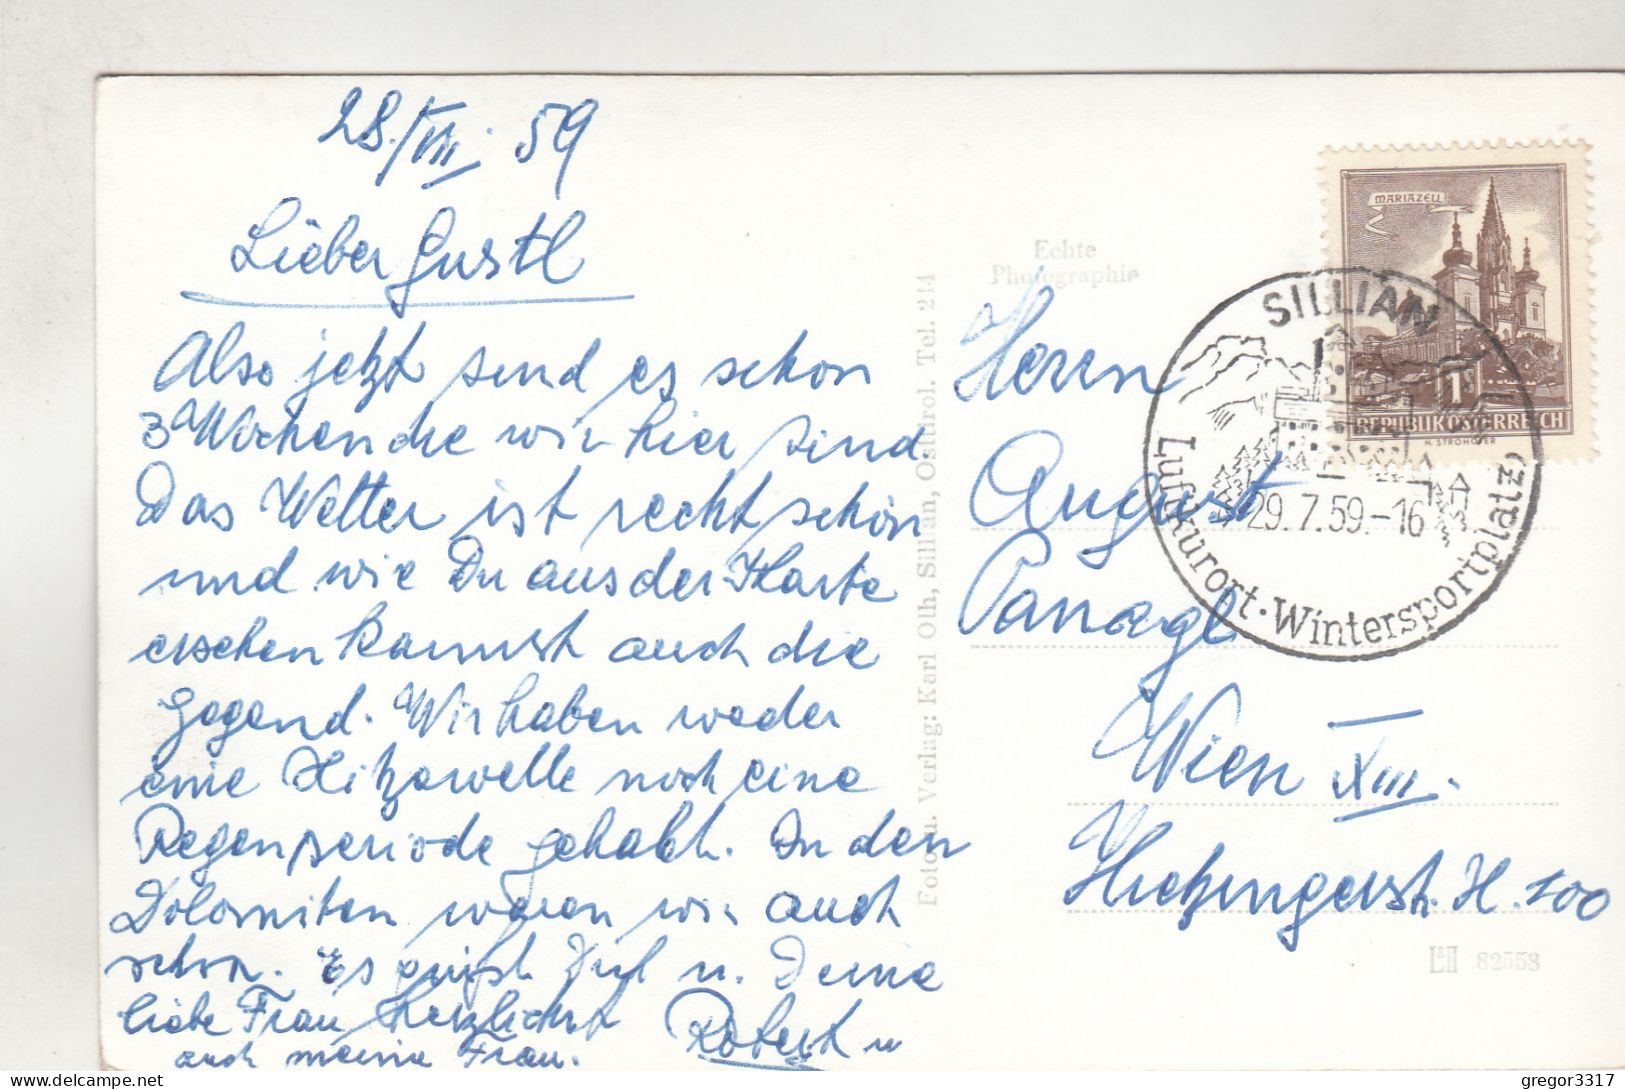 D2932) SILLIAN Mit Helm - Osttirol - Häuser Kirche Wiesen Berge 1959 - Sillian